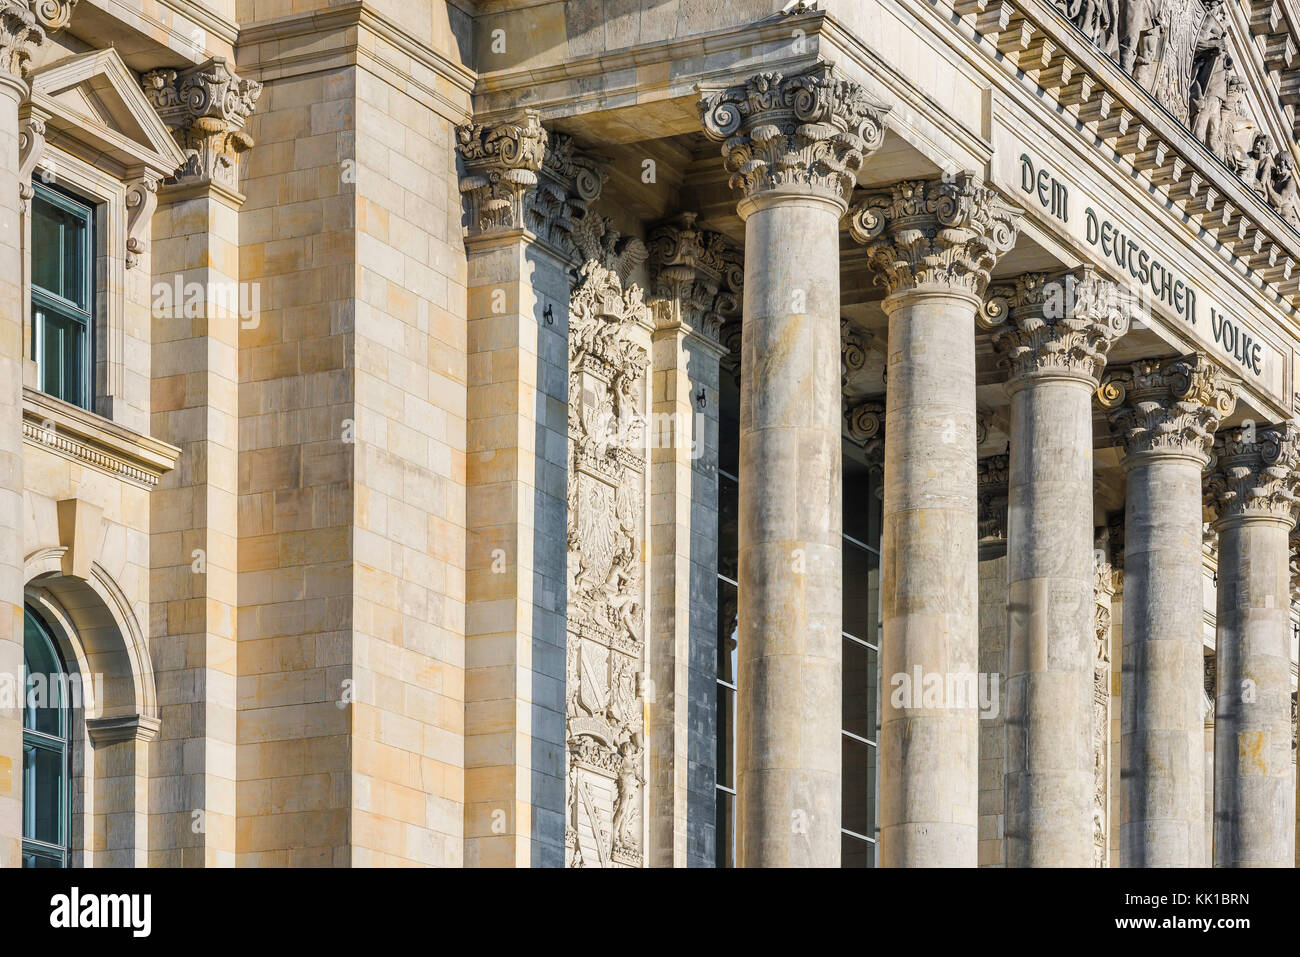 Berliner Parlamentsgebäude, Blick auf die Säulen und die Inschrift auf dem großen Portikus des Reichstagsgebäudes in Berlin, Deutschland. Stockfoto